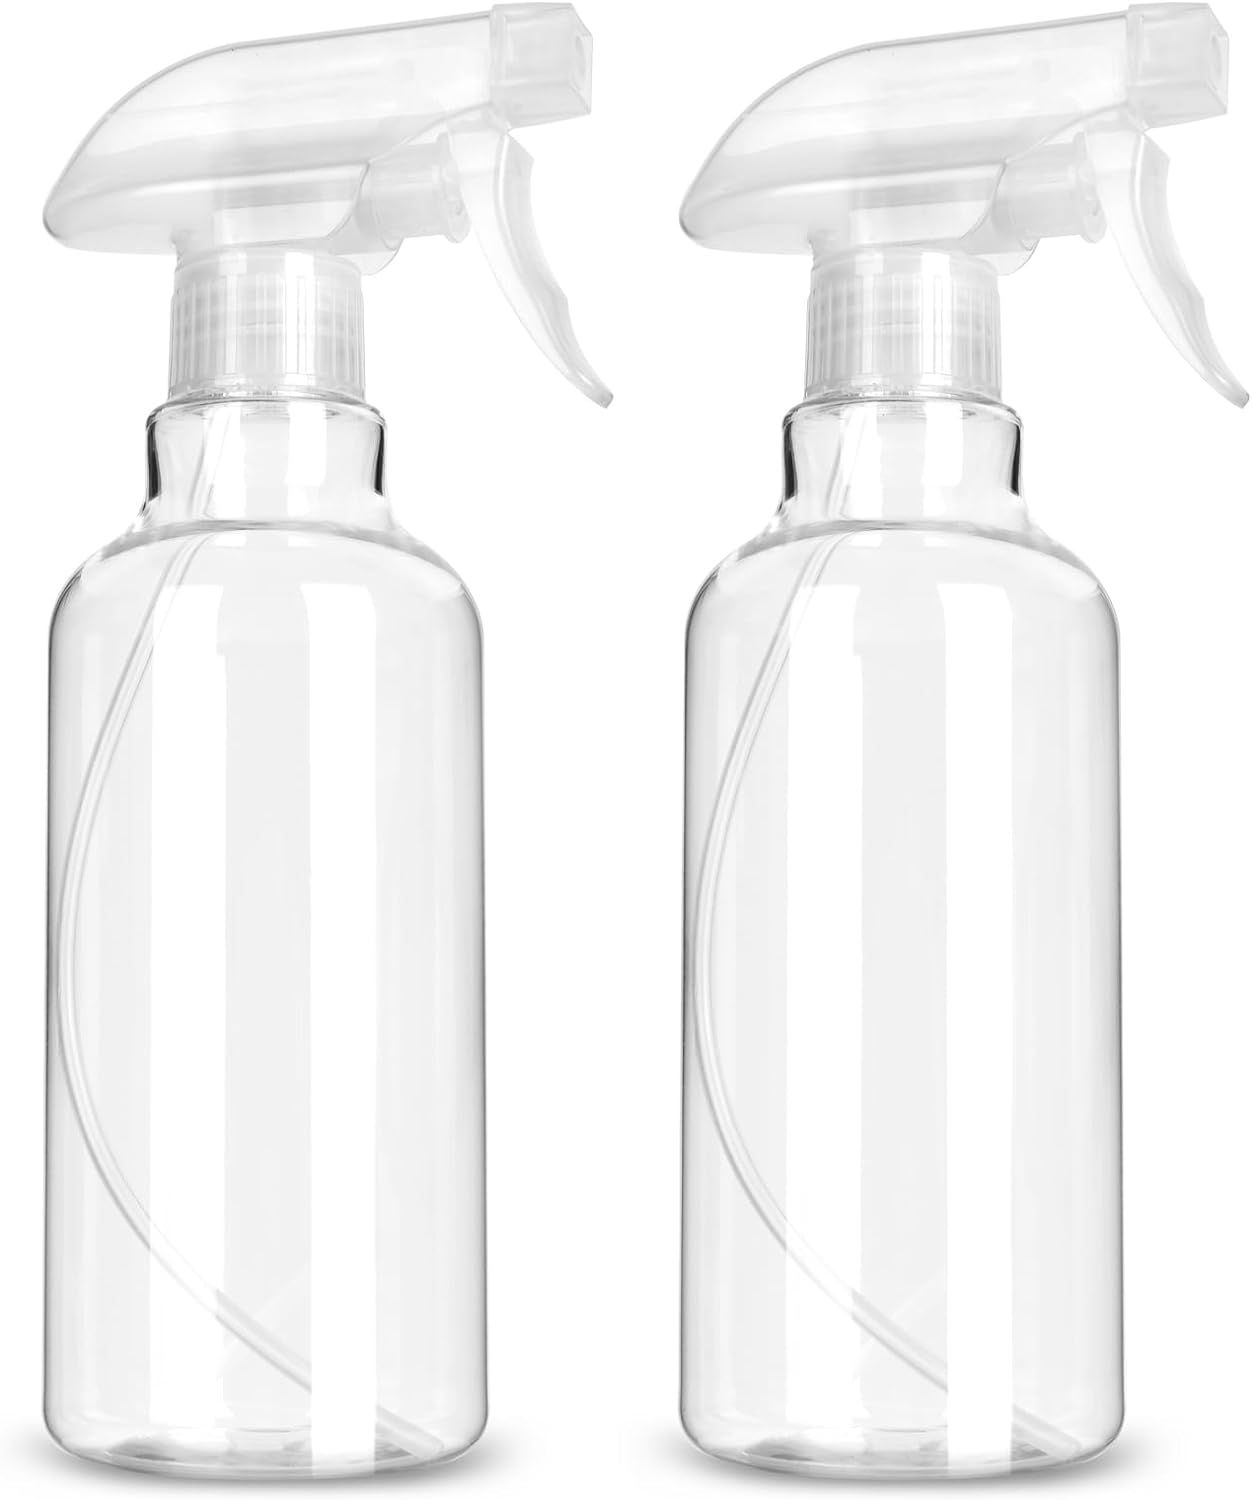 Plastic Spray Bottles - 2 Pack 16 OZ Empty Spray Bottle,Heavy Duty Spraying Bottles Mist/Stream W... | Amazon (US)